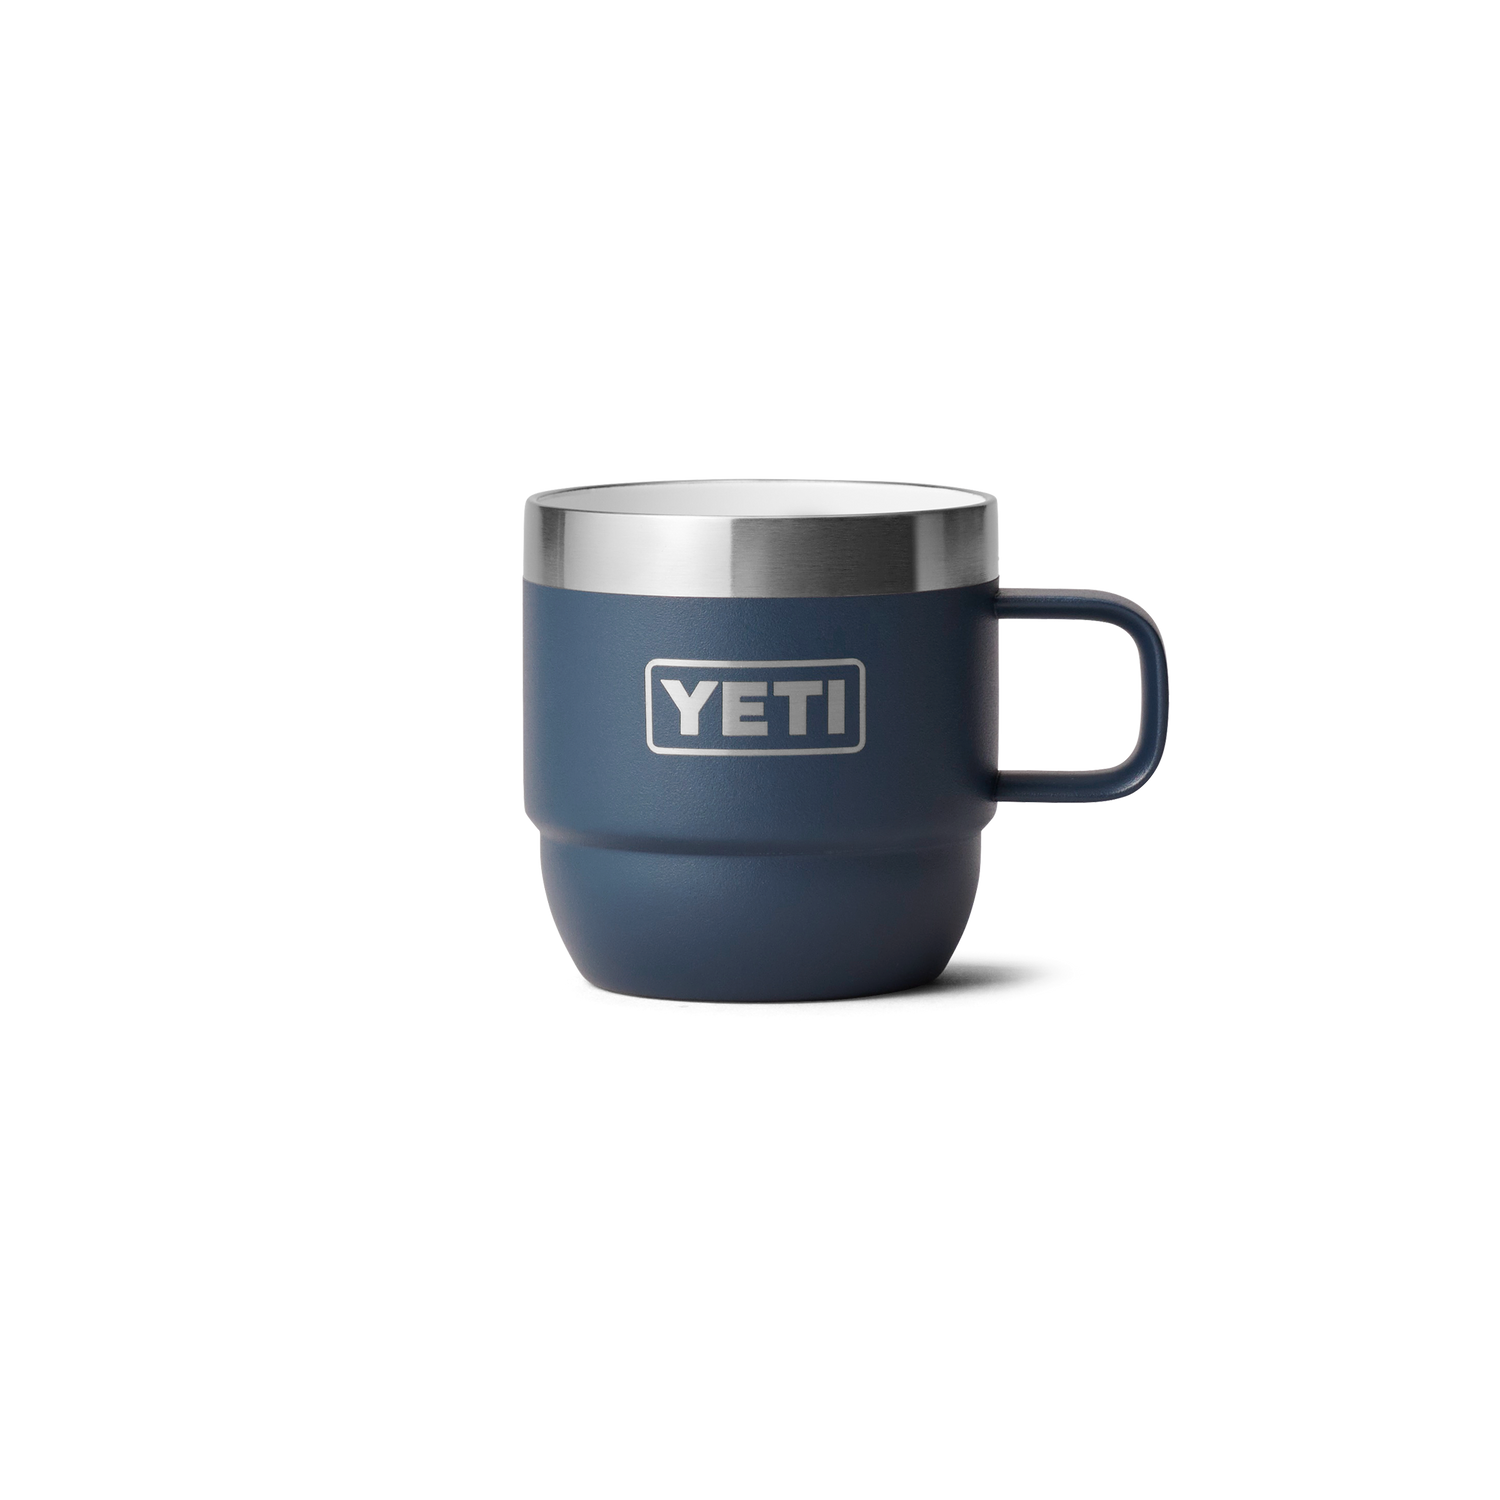  YETI Rambler 6 oz Stackable Mug, Stainless Steel